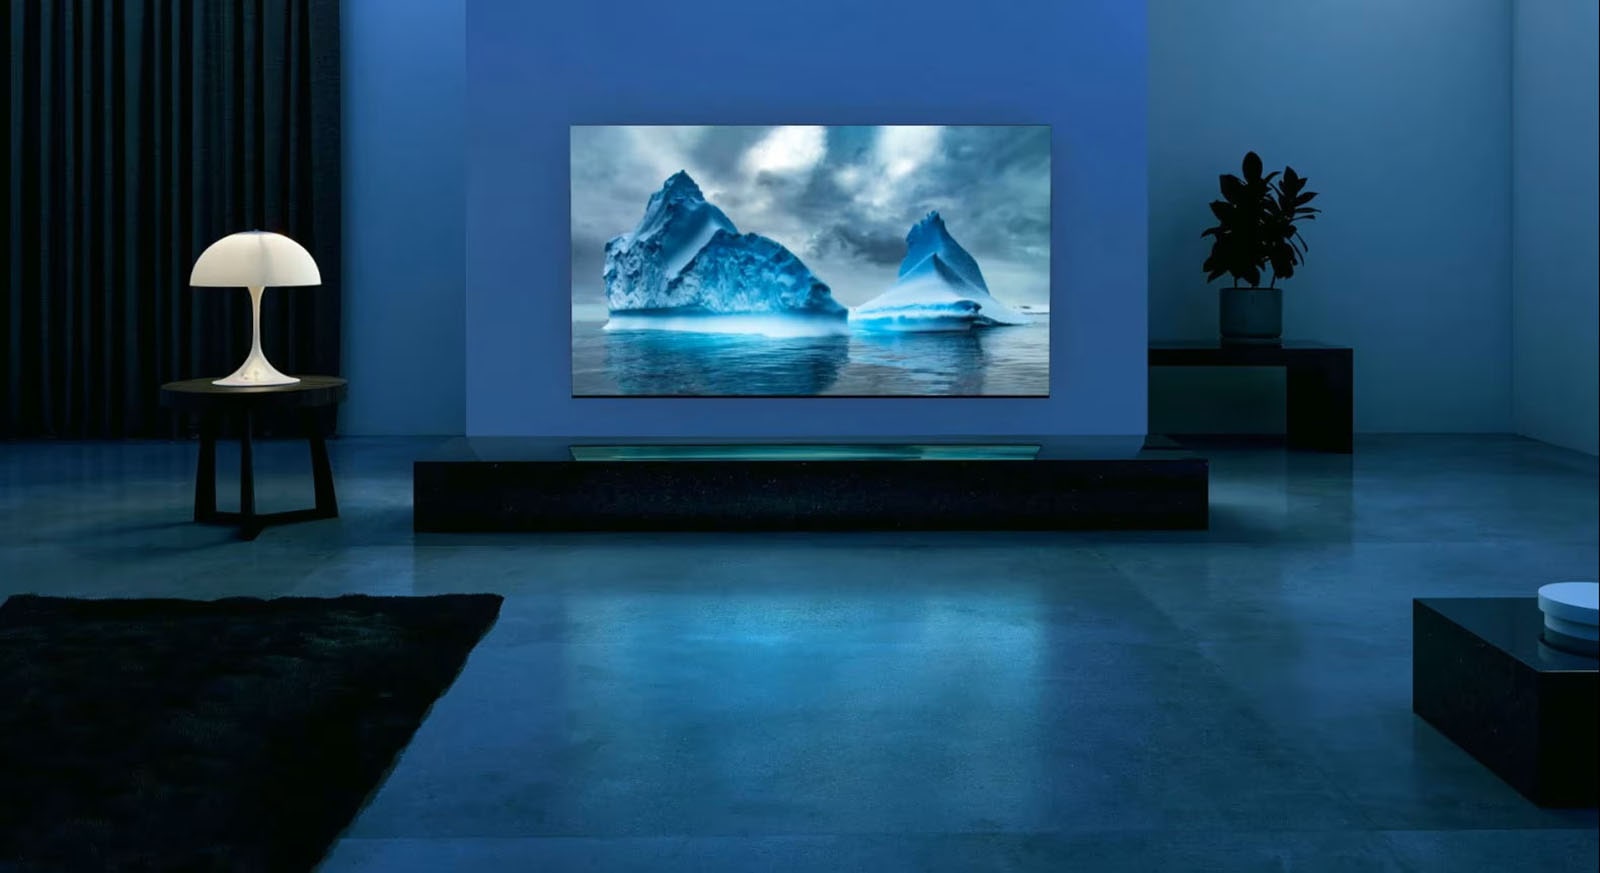 Niebieski neonowy obwód porusza się dookoła na zdjęciu niebieskiego lodowca. Kamera oddala się, aby ukazać ten niebieski lodowiec na ekranie telewizora. Telewizor znajduje się w szerokim pokoju dziennym z niebieskim tłem. 